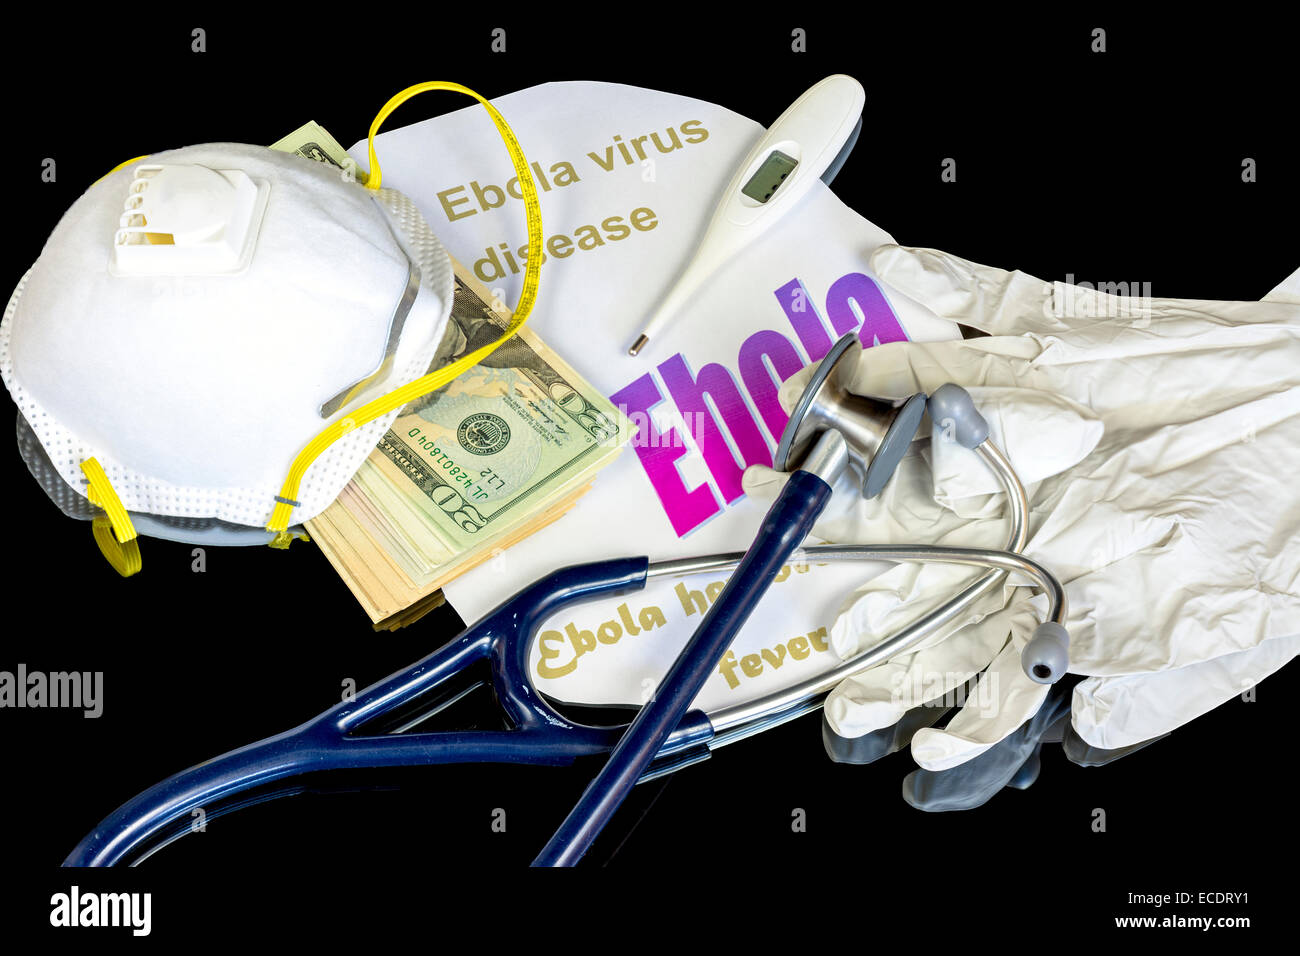 Ebola gloves mask and Stethoscope with money Stock Photo